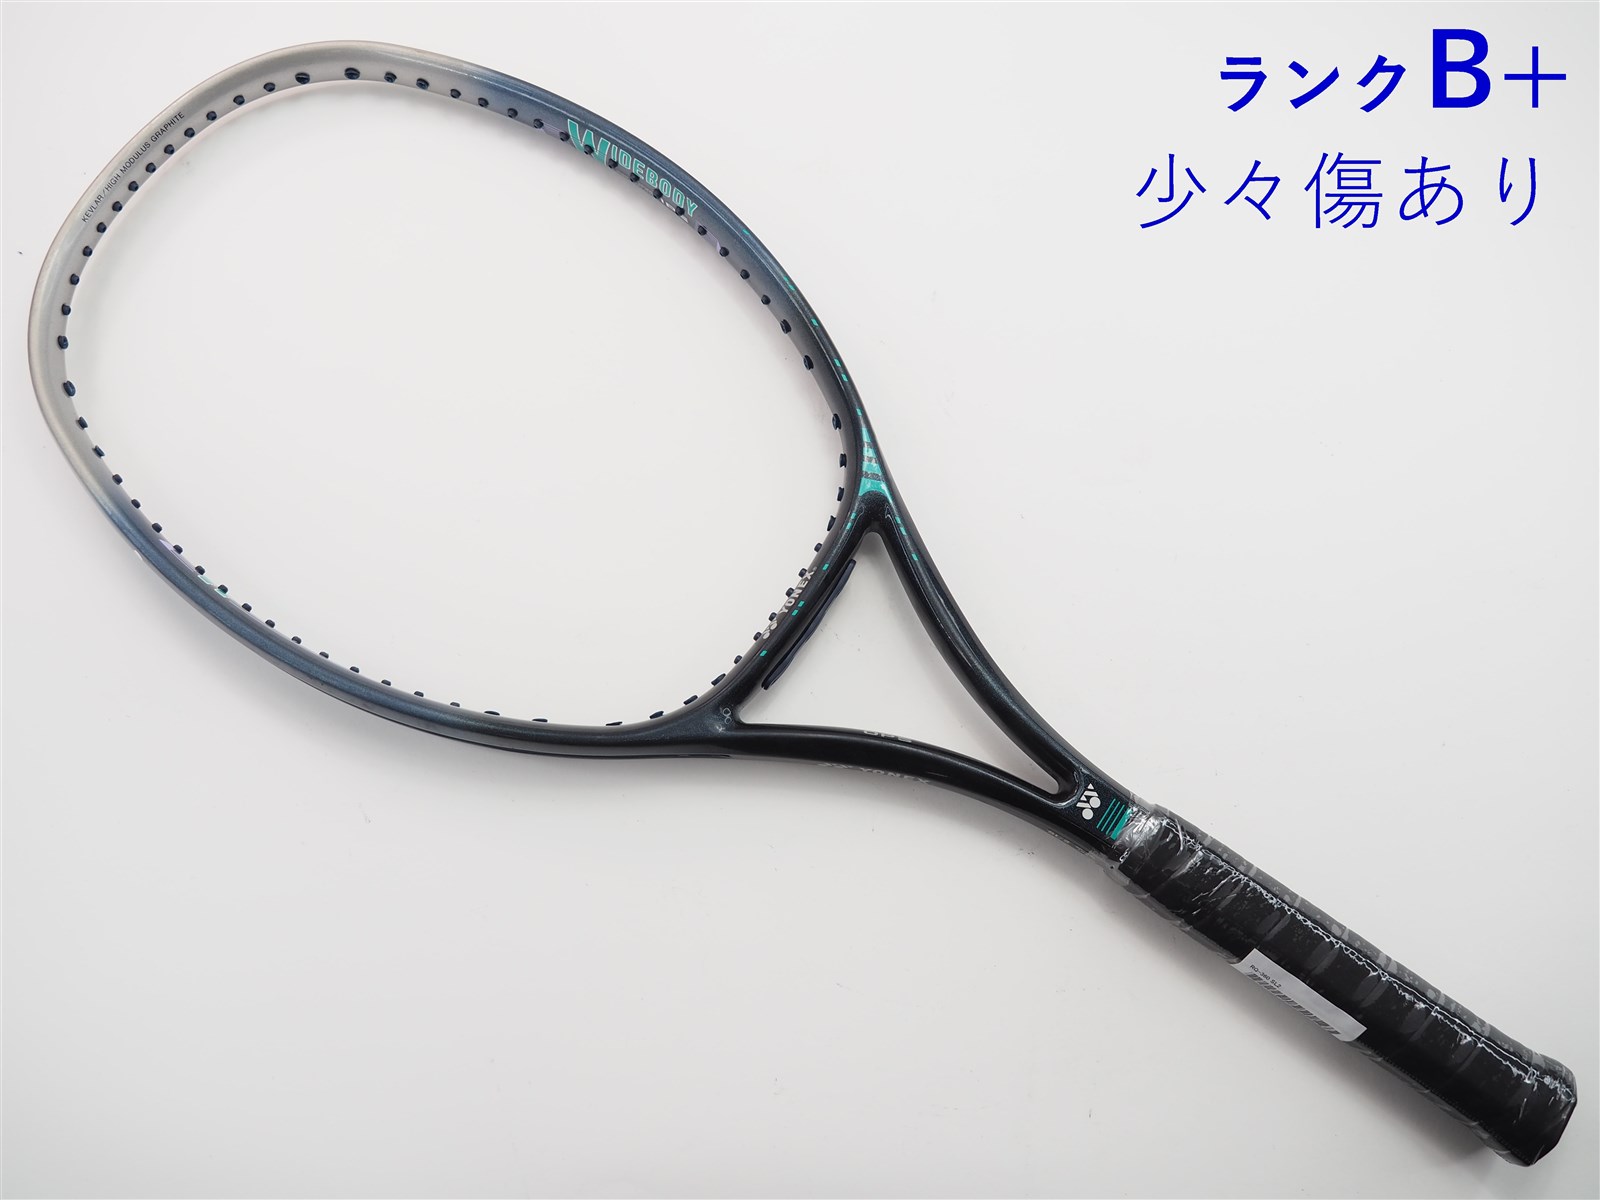 【中古】ヨネックス RQ-360YONEX RQ-360(SL2)【中古 テニスラケット】【送料無料】